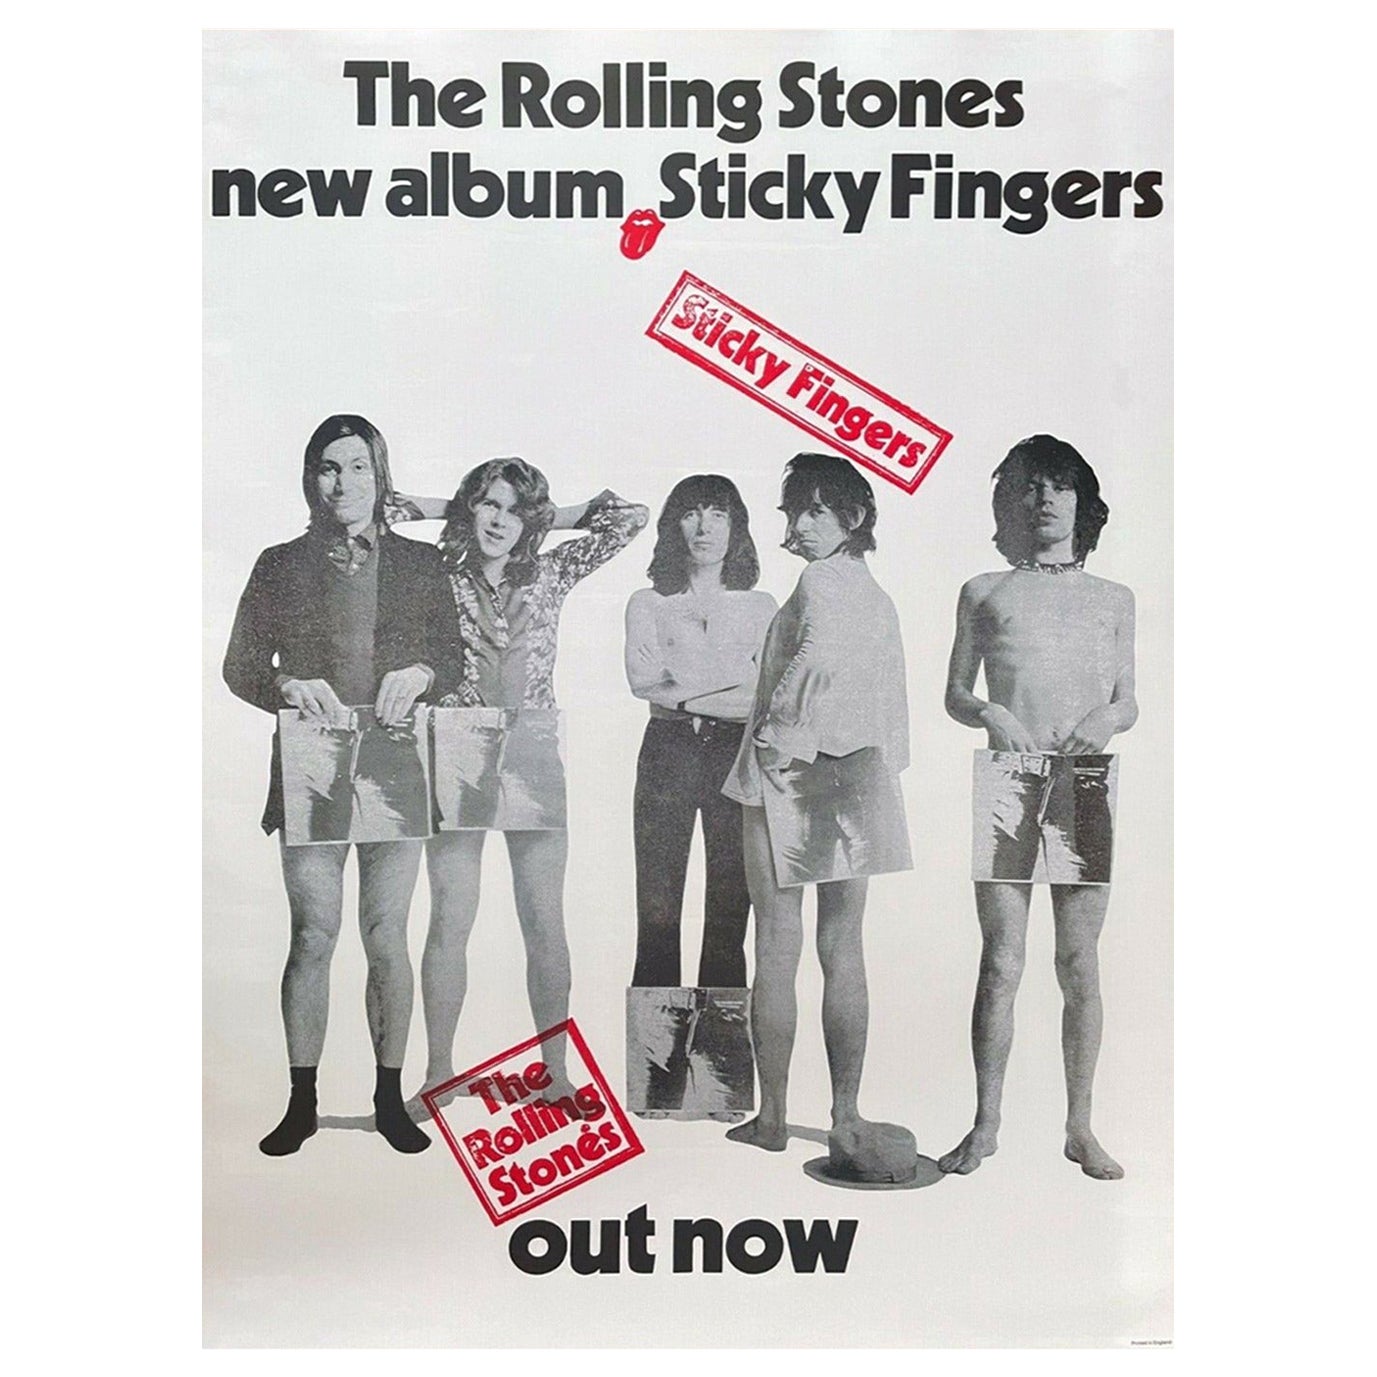 Les Rolling Stones - Affiche vintage d'origine, 1971